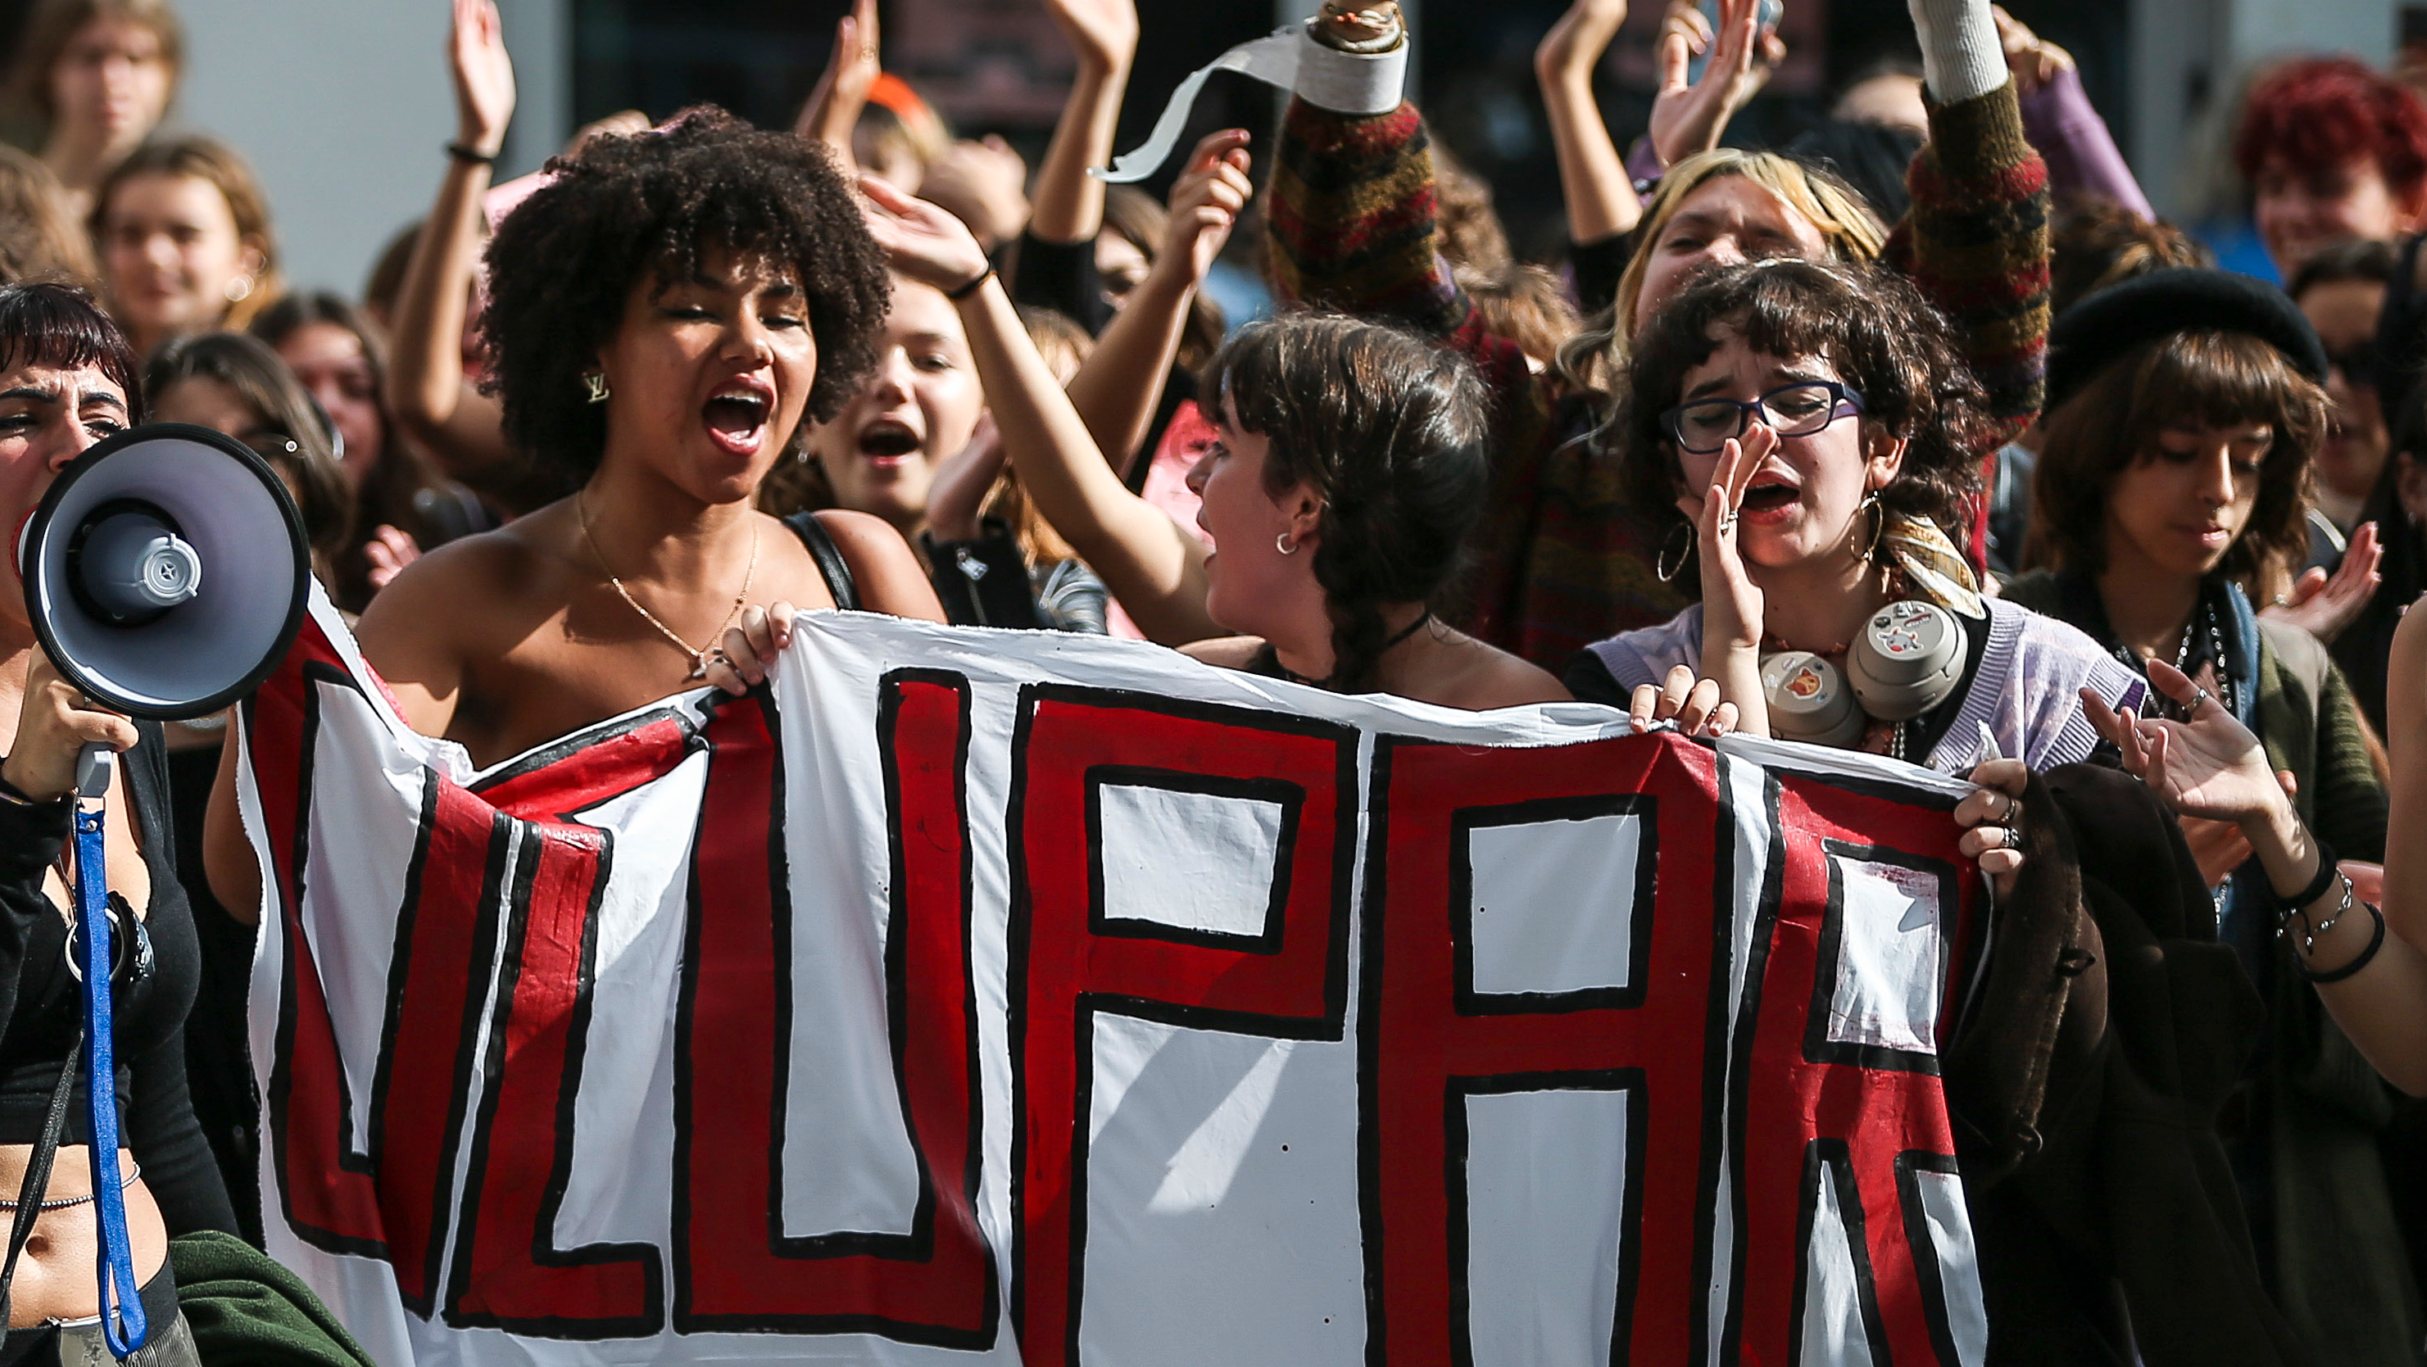 Ao longo da última semana, jovens ativistas promoveram um protesto que passou pela ocupação de escolas secundárias e faculdades em Lisboa a apelar à preservação do planeta